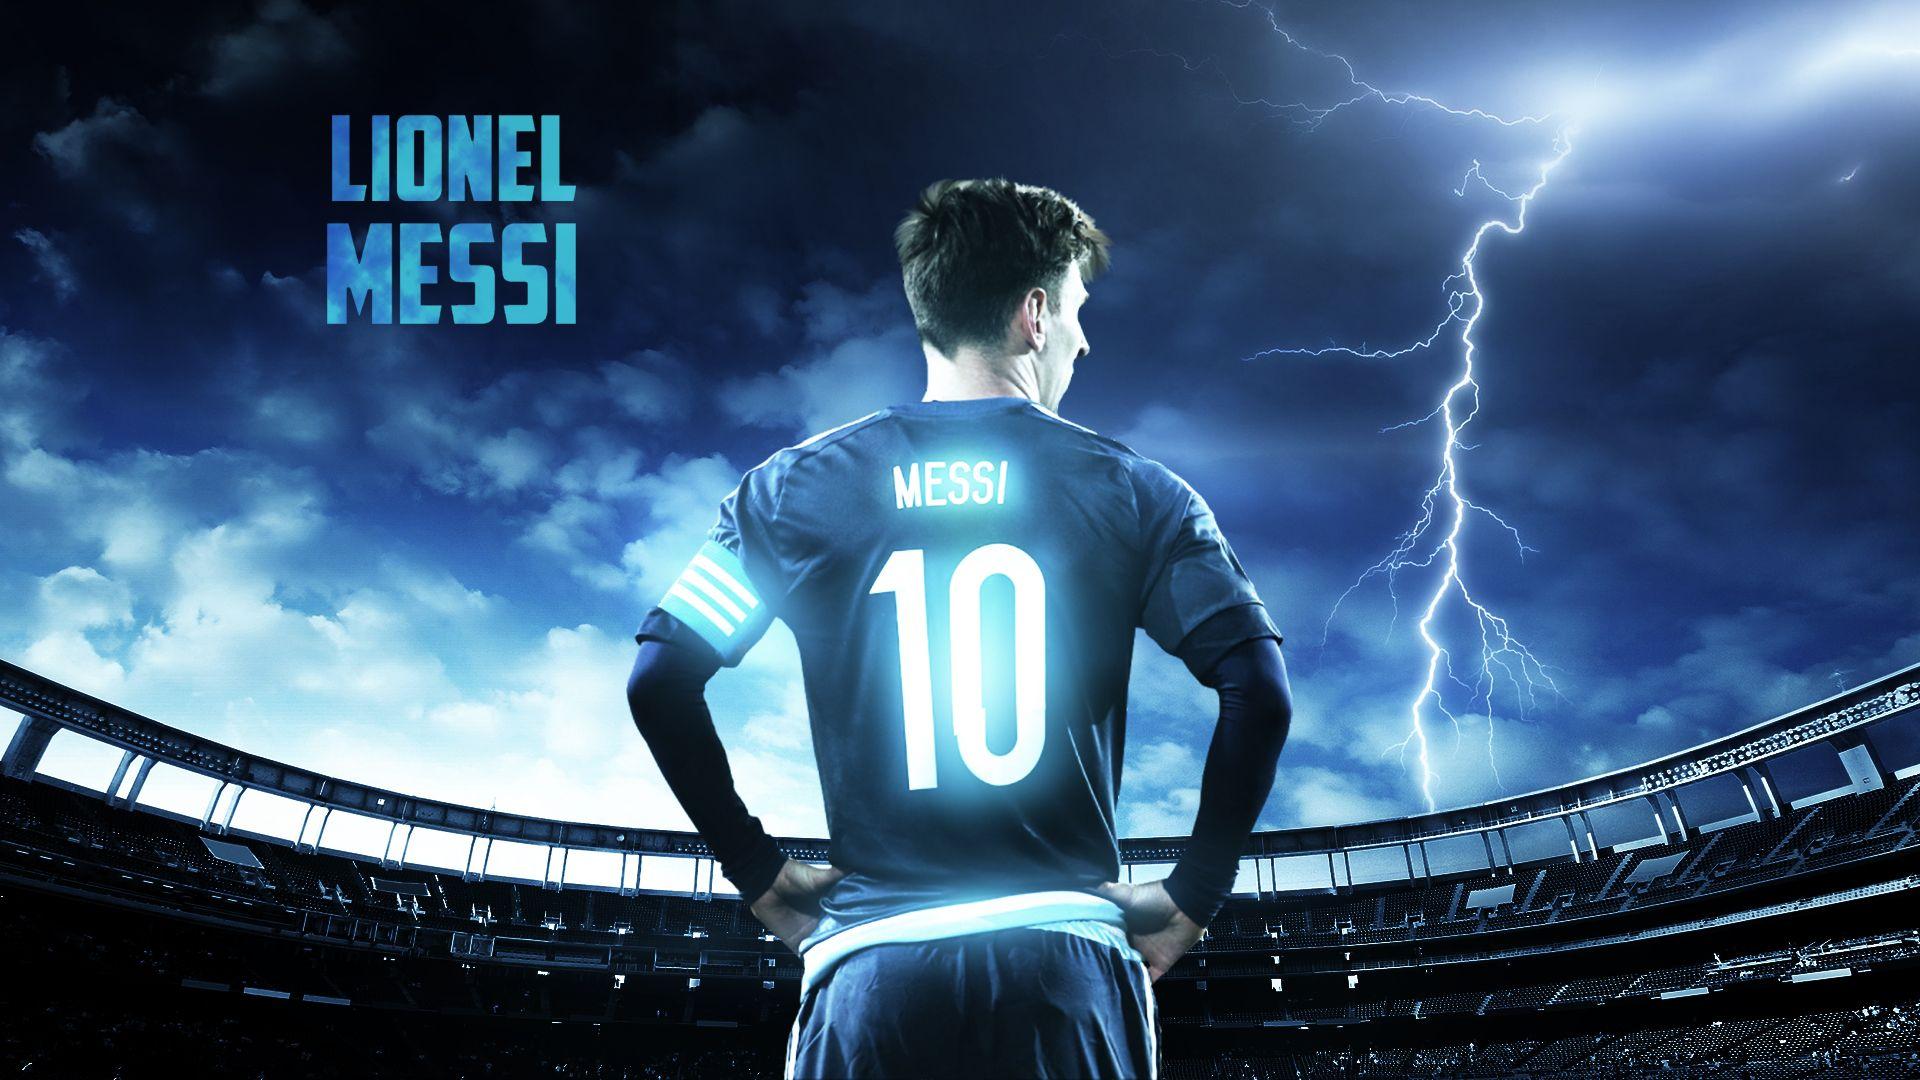 Messi 10 Wallpapers - Top Những Hình Ảnh Đẹp sẽ đưa bạn vào những khoảnh khắc đẹp nhất của siêu sao bóng đá Lionel Messi. Các hình ảnh chụp tại sân cỏ, trên bãi biển, hay bên gia đình đều góp phần tạo nên một bộ sưu tập thú vị và đầy thăng hoa. Tải ngay để khám phá nhé!